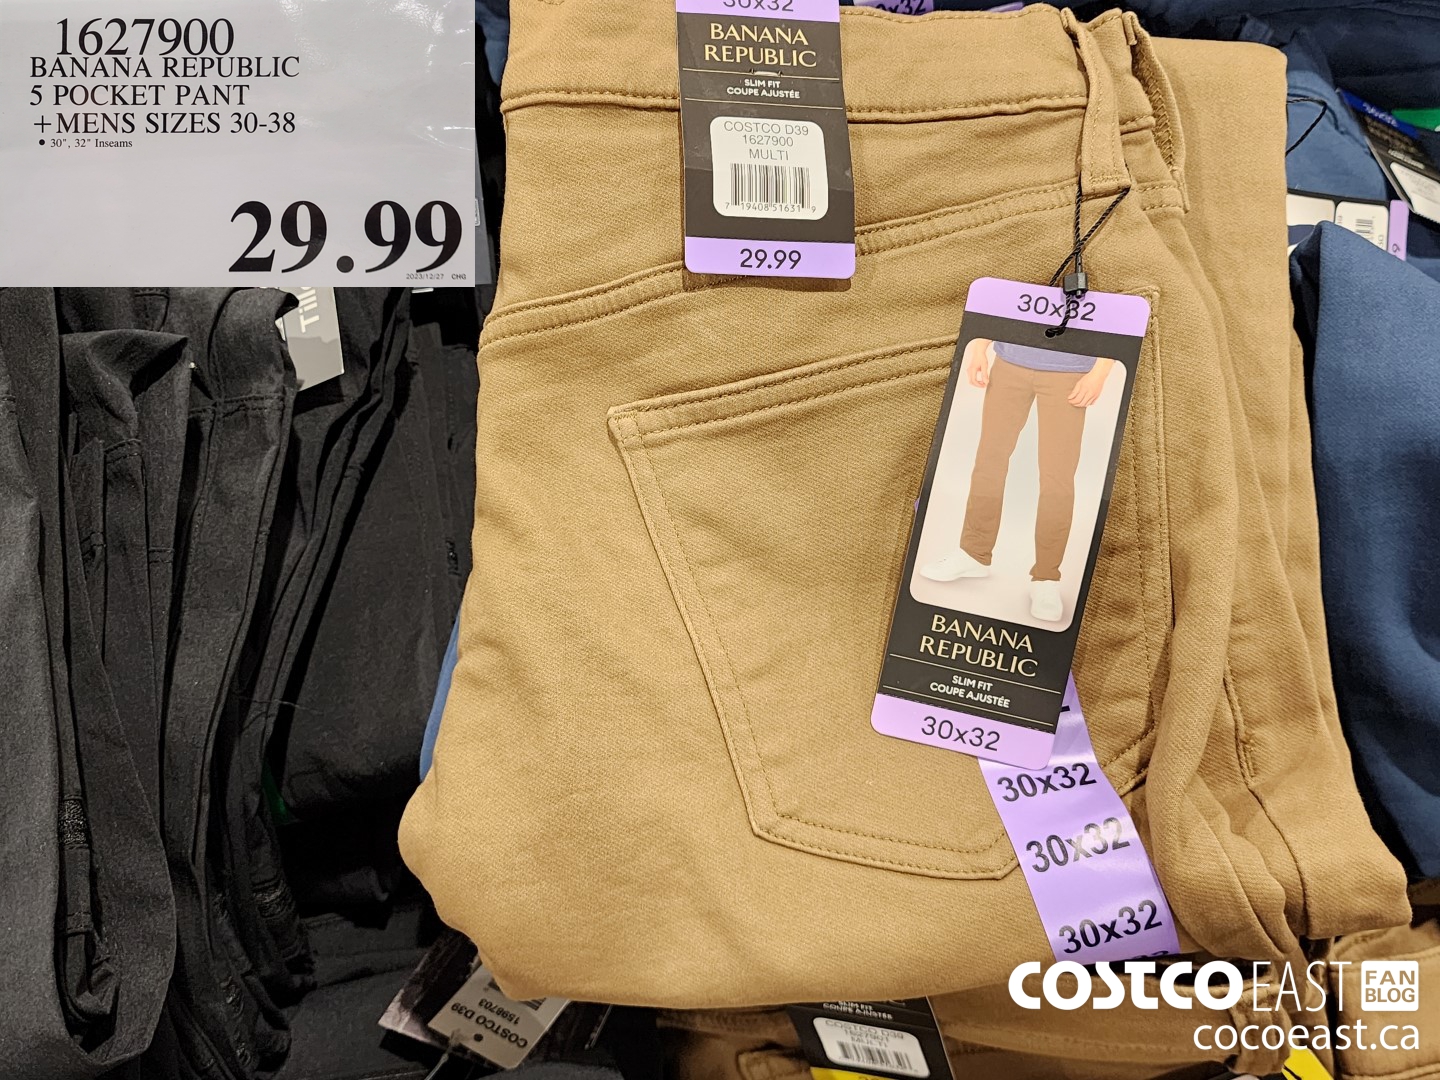 Costco: Banana Republic Men's 5 Pocket Pant - $18.99